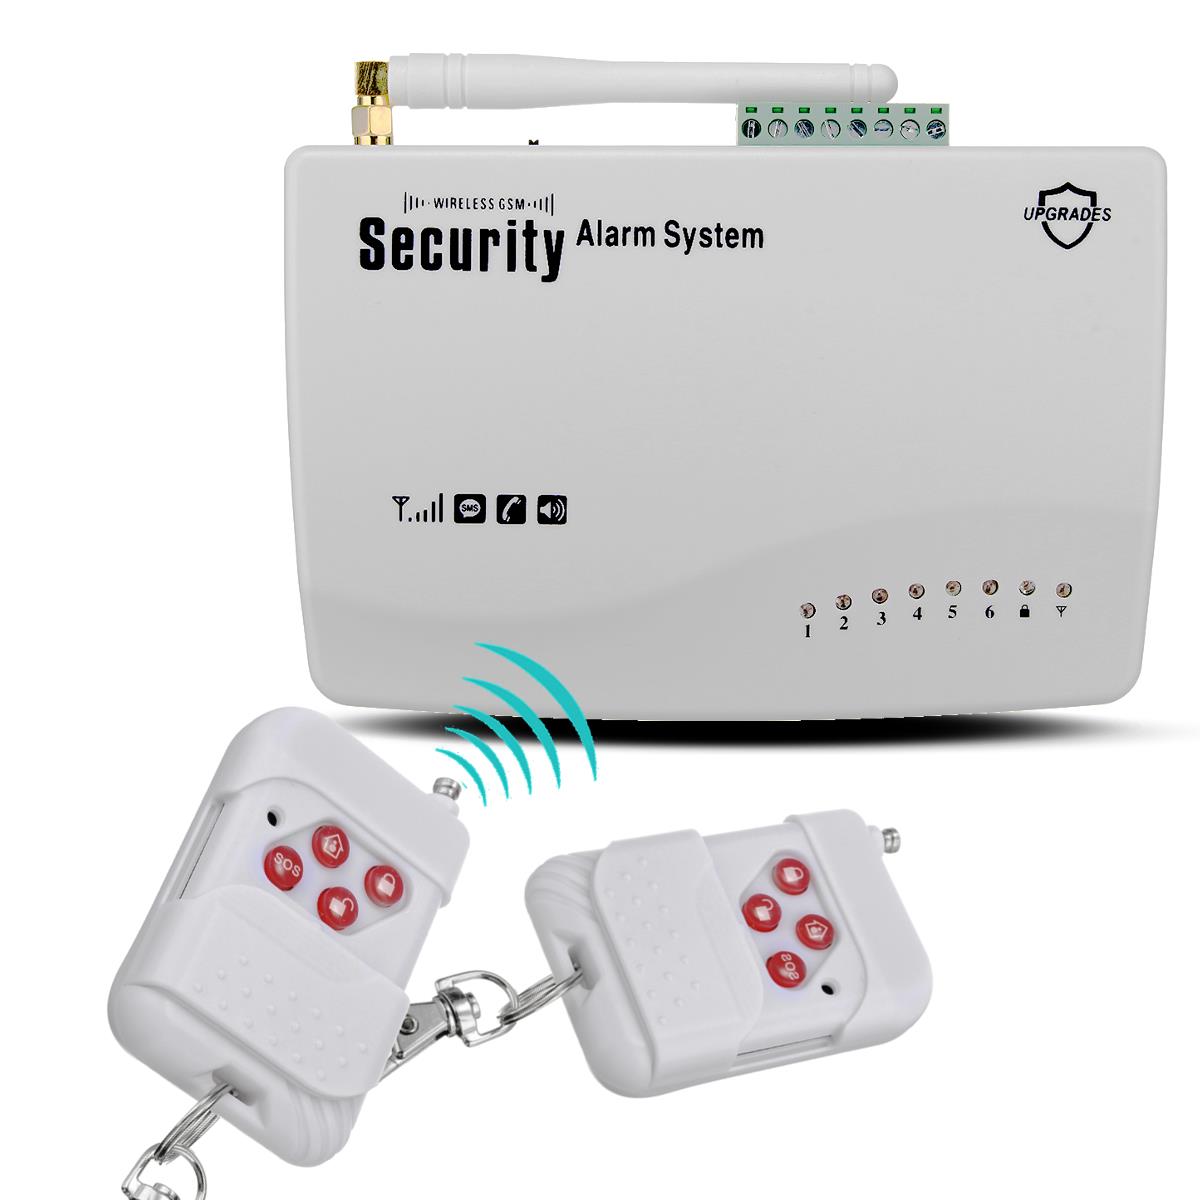 

Беспроводной Голос GSM Система охранной сигнализации Главная Безопасность Охранный автодозвон SMS SIM-звонок